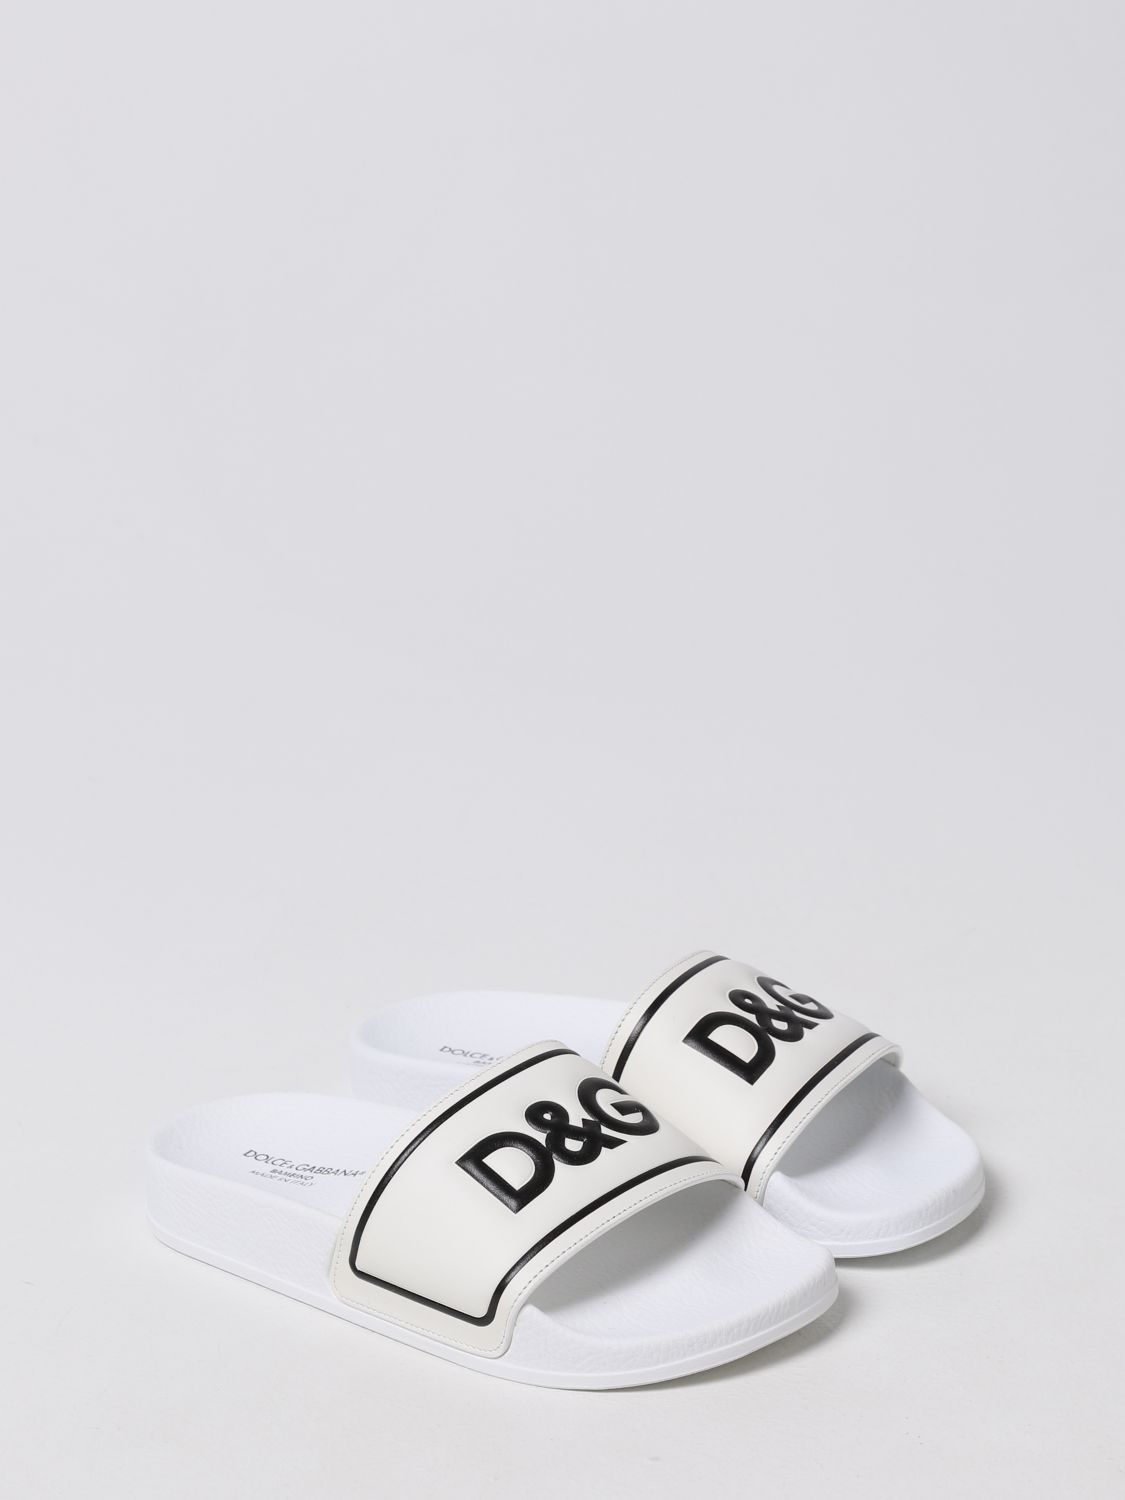 DOLCE & GABBANA: Sandalias con Blanco | Zapatos Dolce & Gabbana DD0318A6E33 en línea en